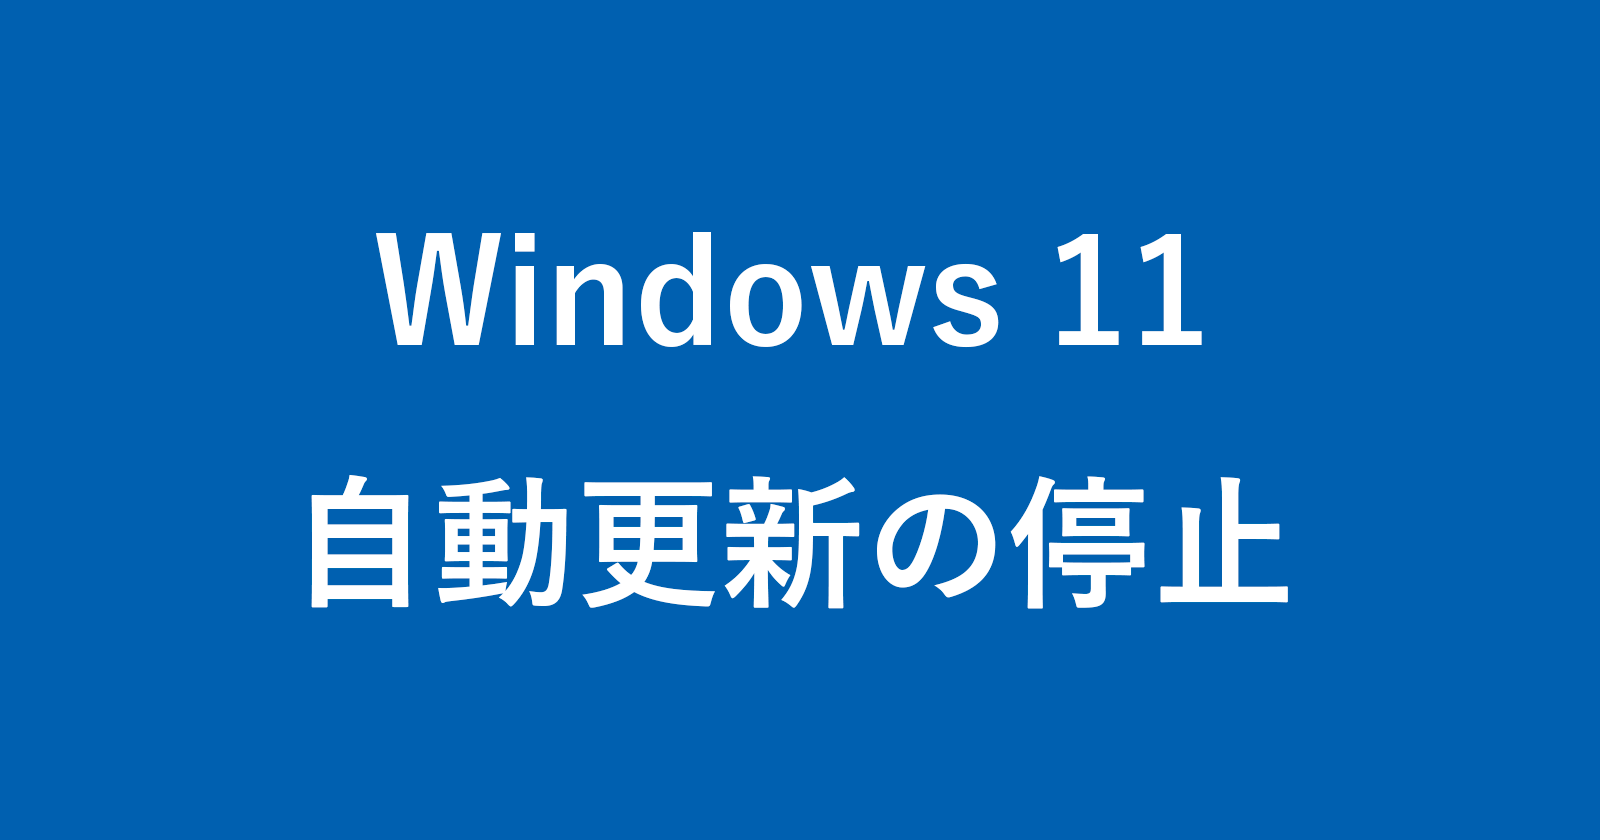 windows 11 stop update